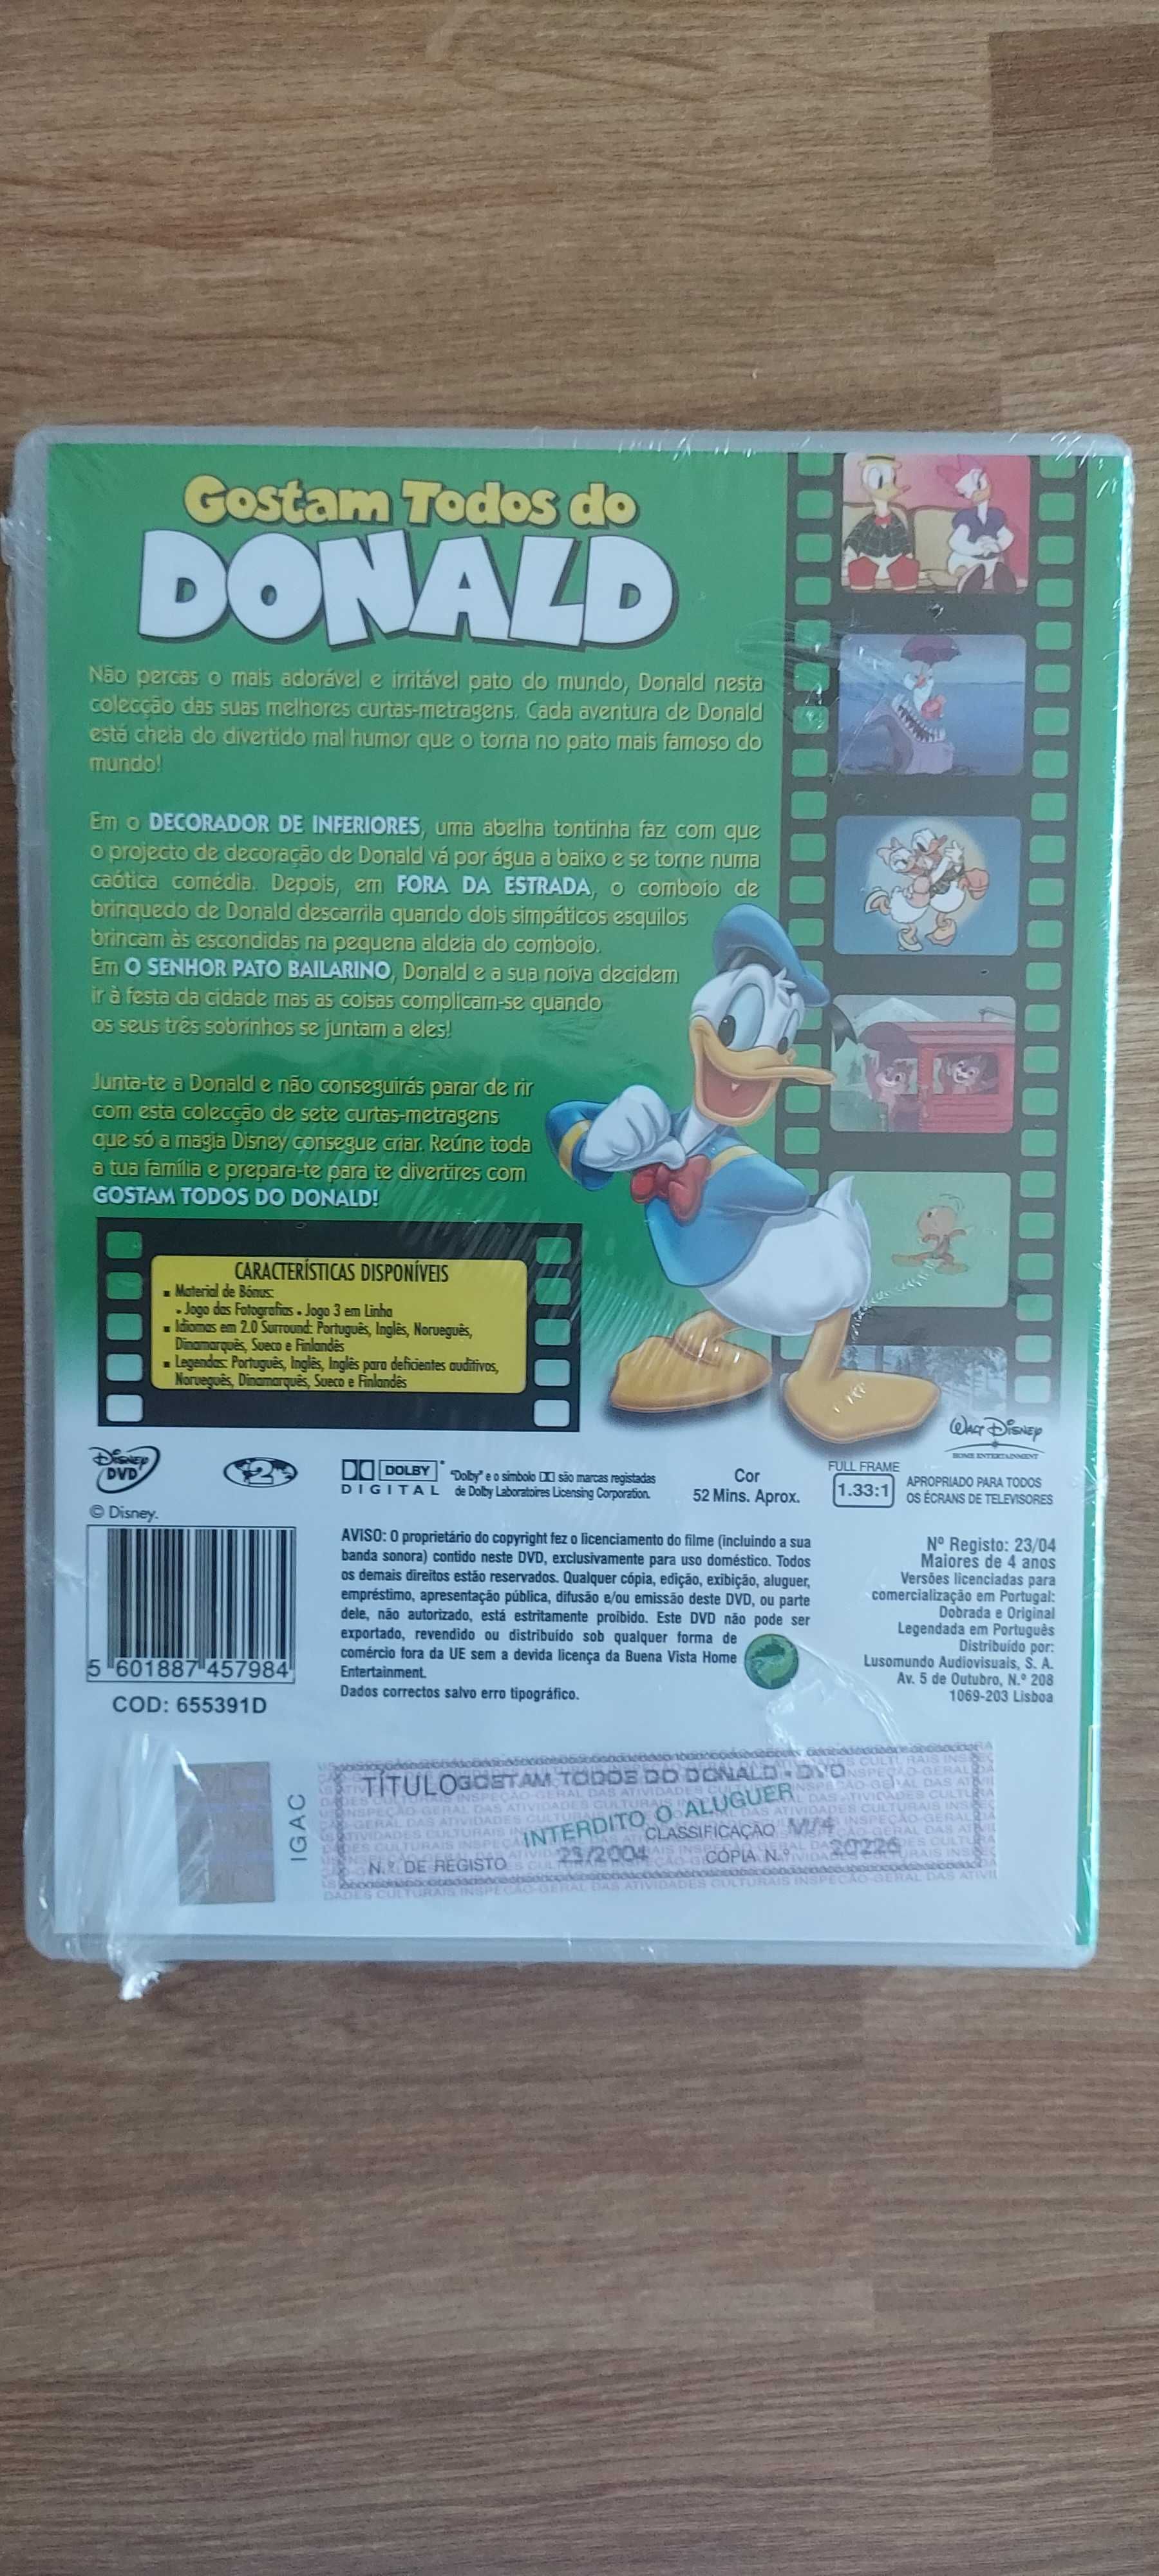 Vendo DVD Gostam todos do Donald - Disney